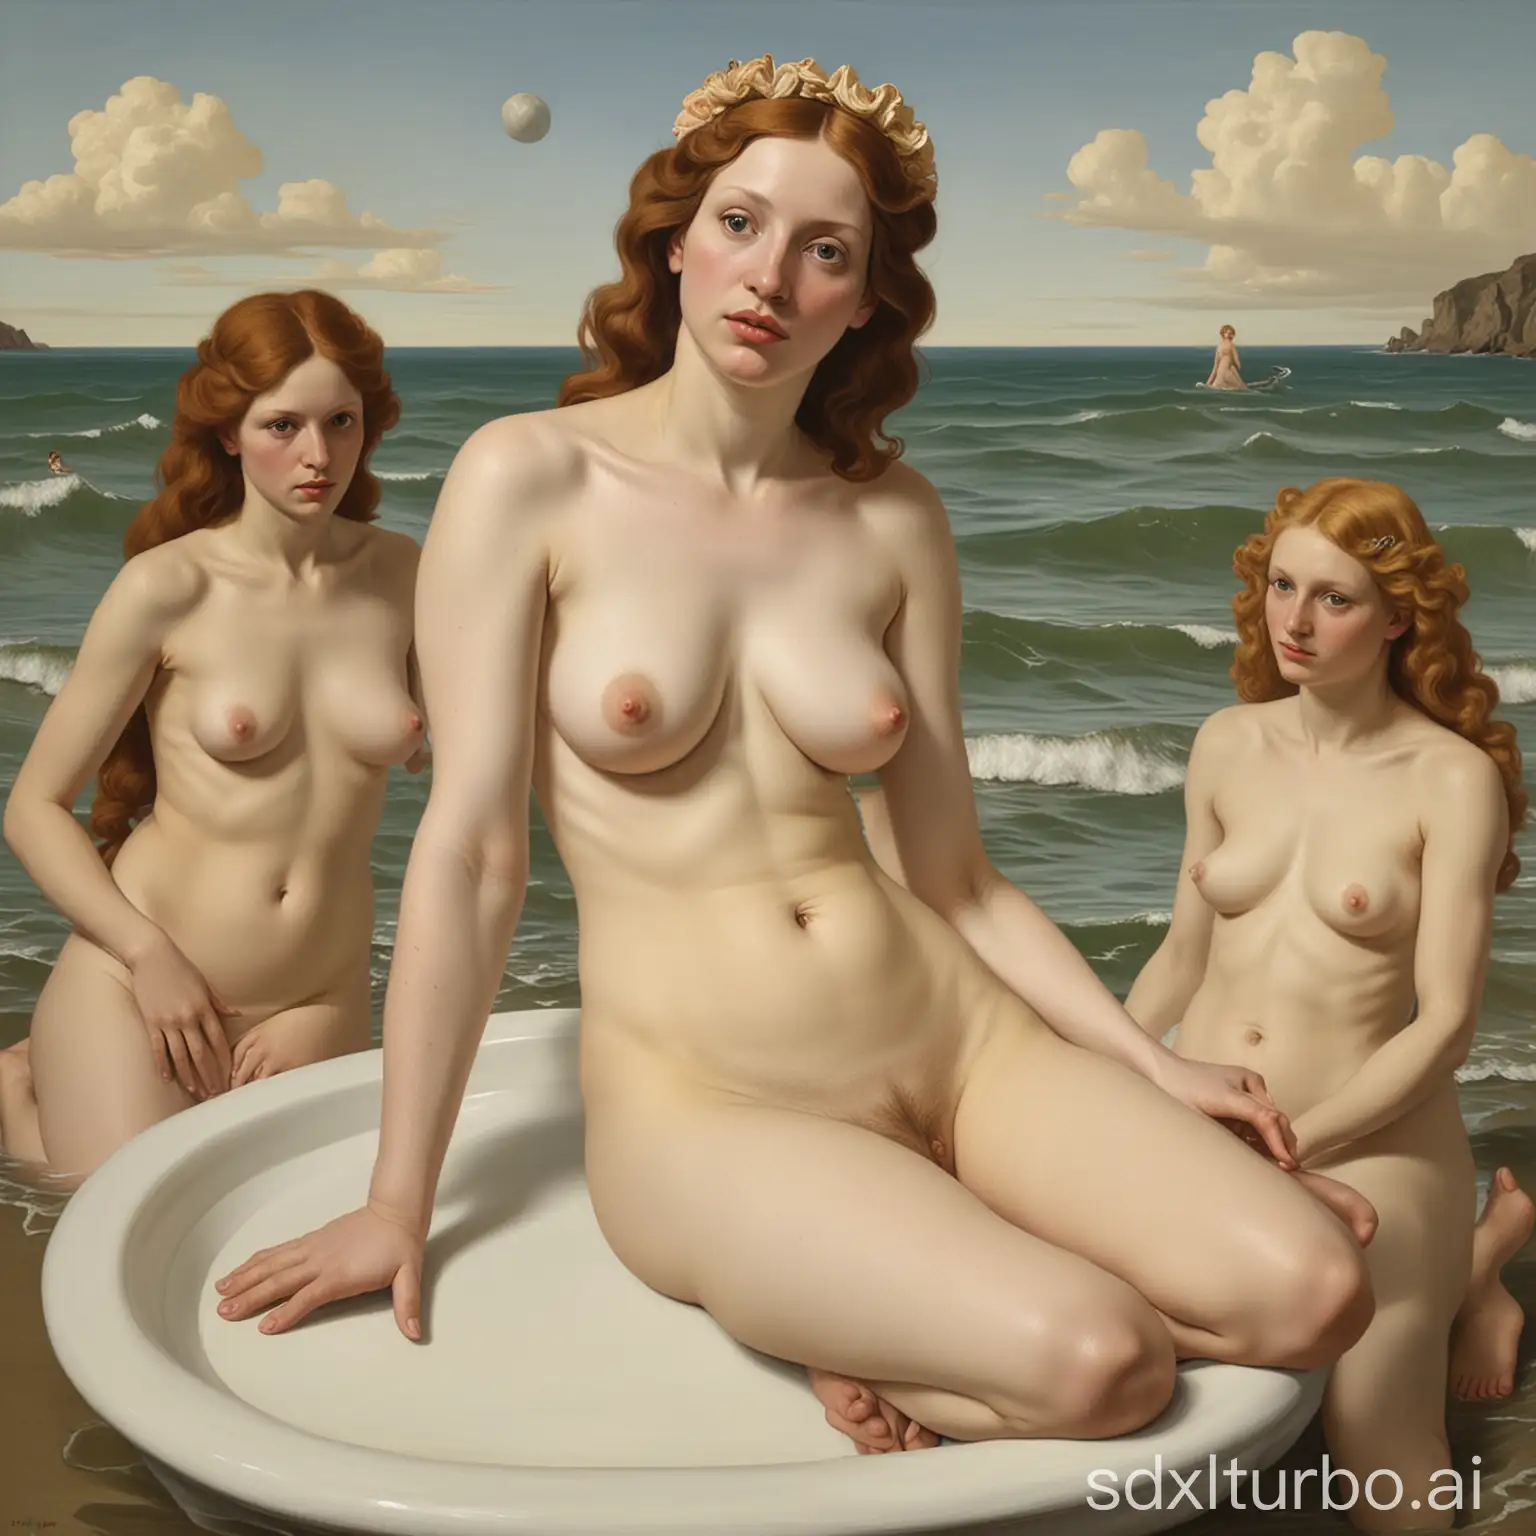 Modern-Interpretation-Birth-of-Venus-by-Lucian-Freud-and-John-Currin